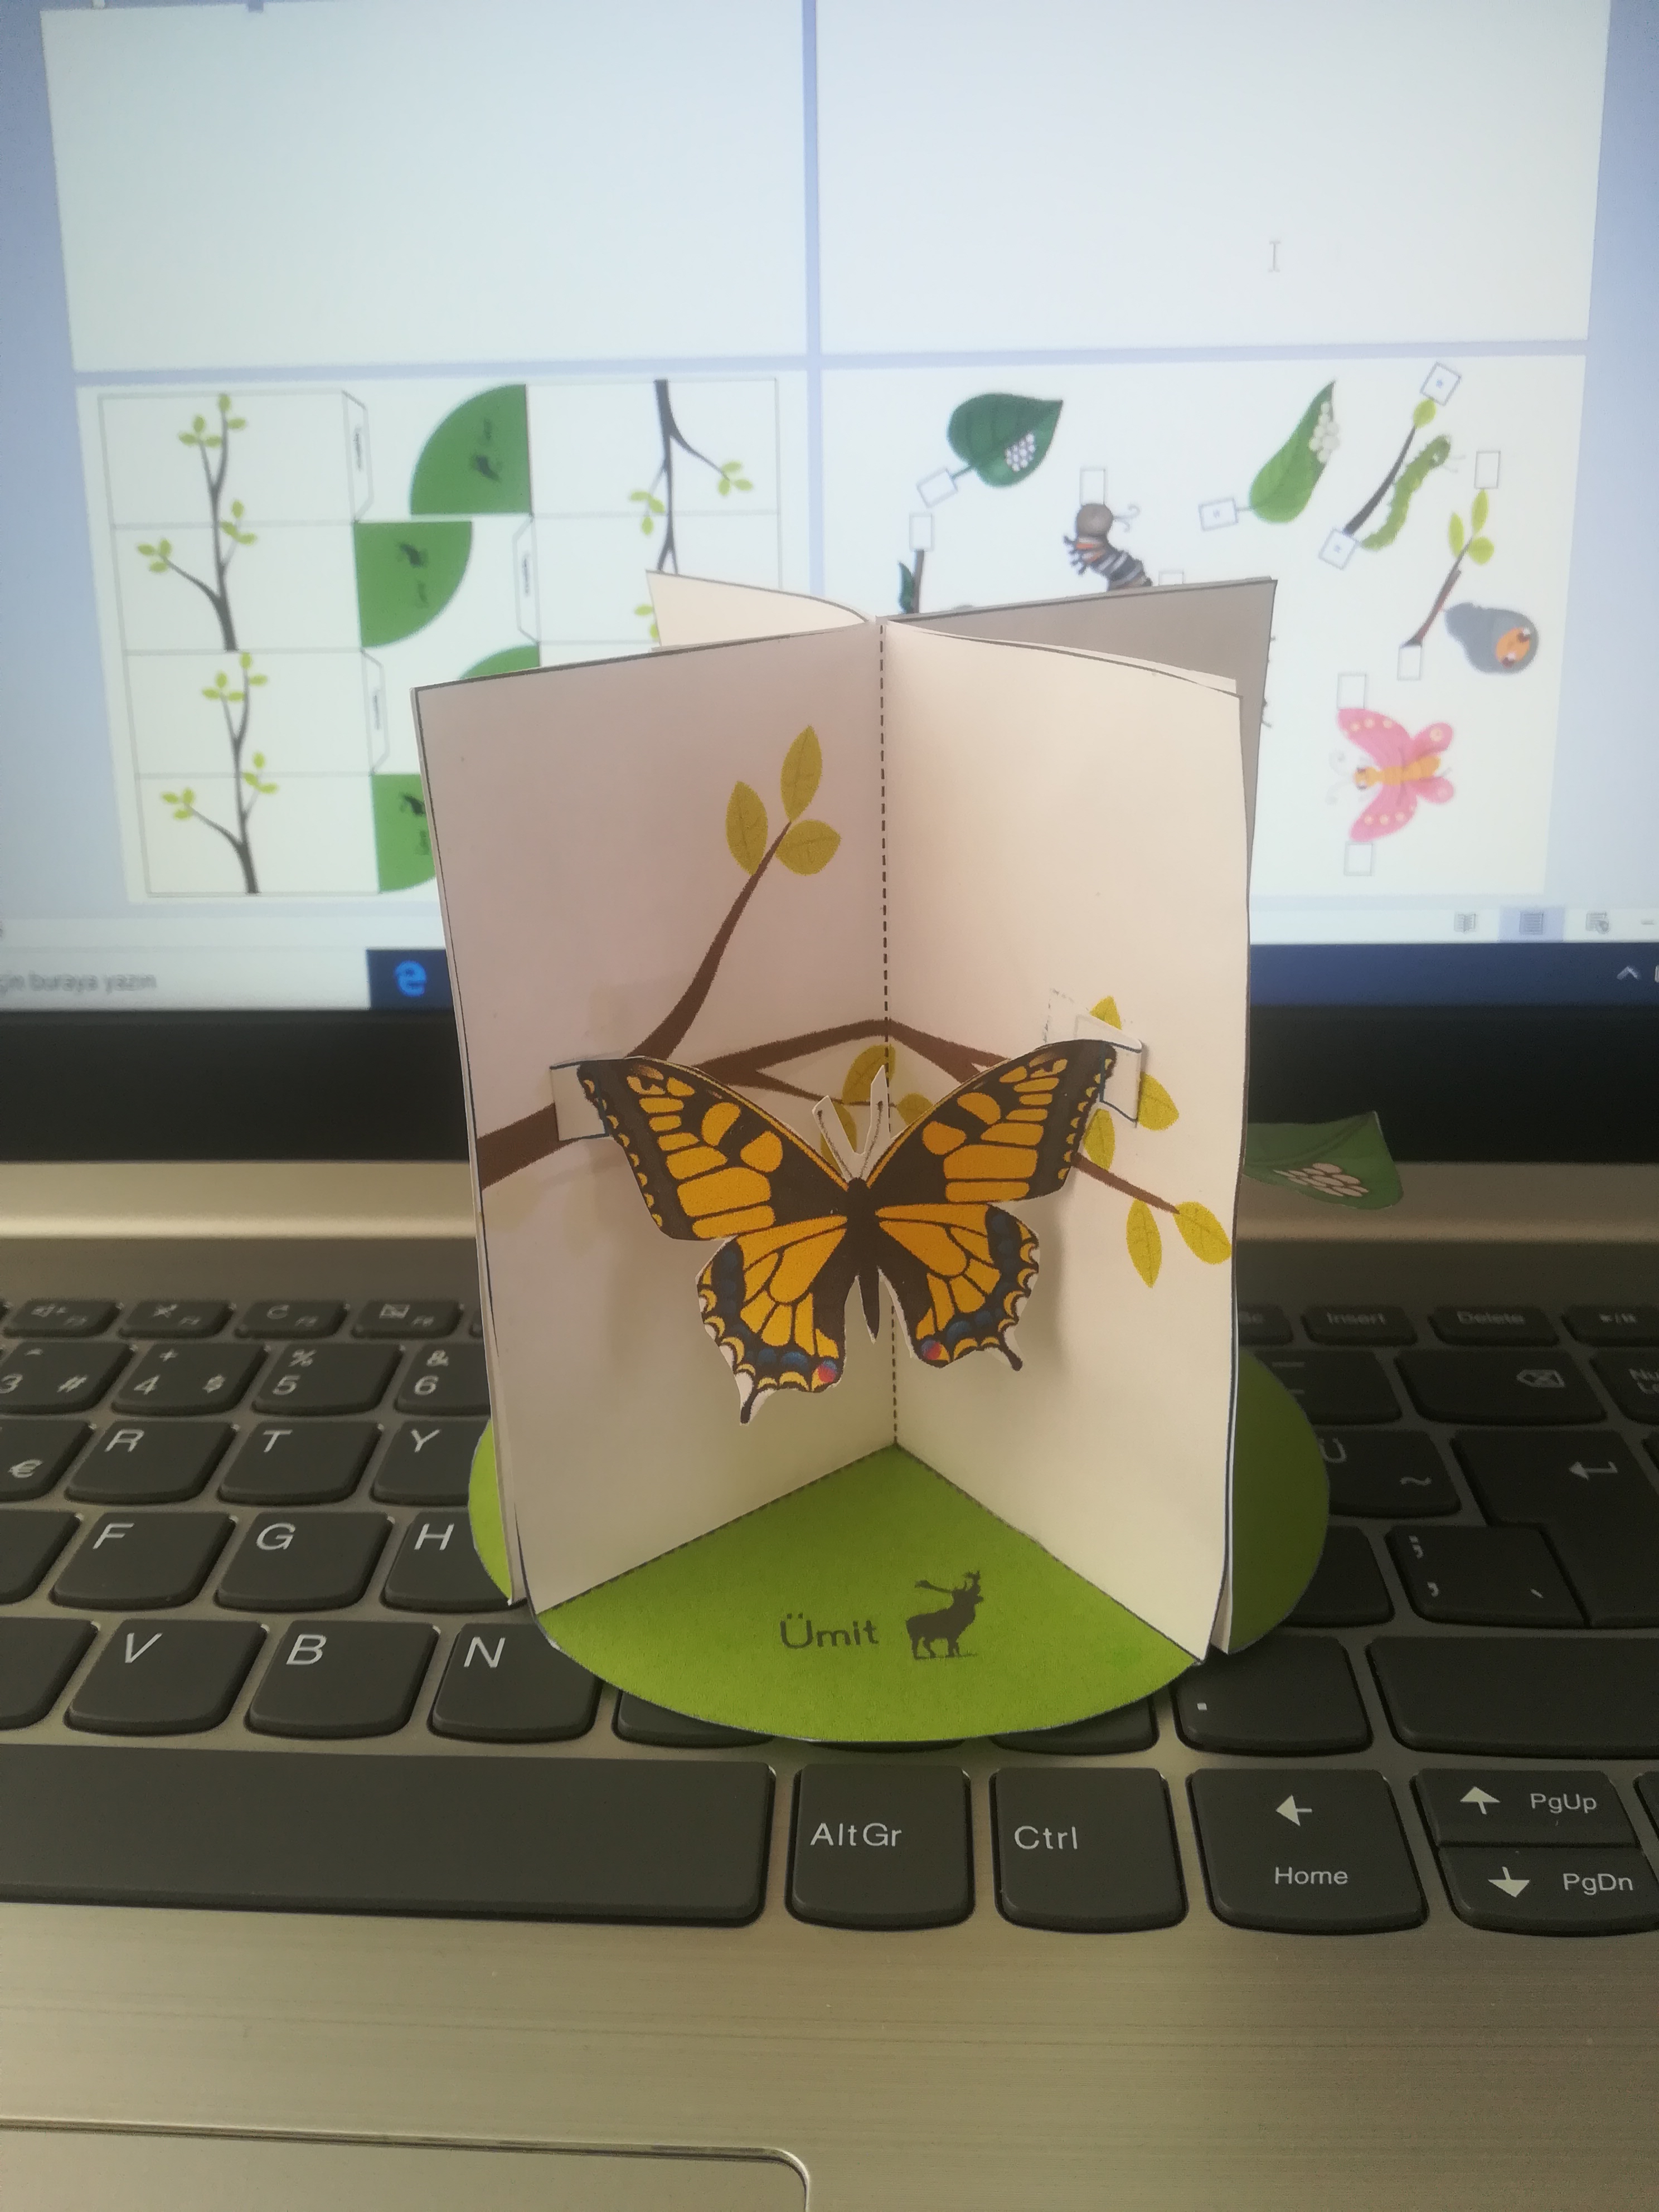  kelebeğin oluşum aşamaları (3 boyutlu)